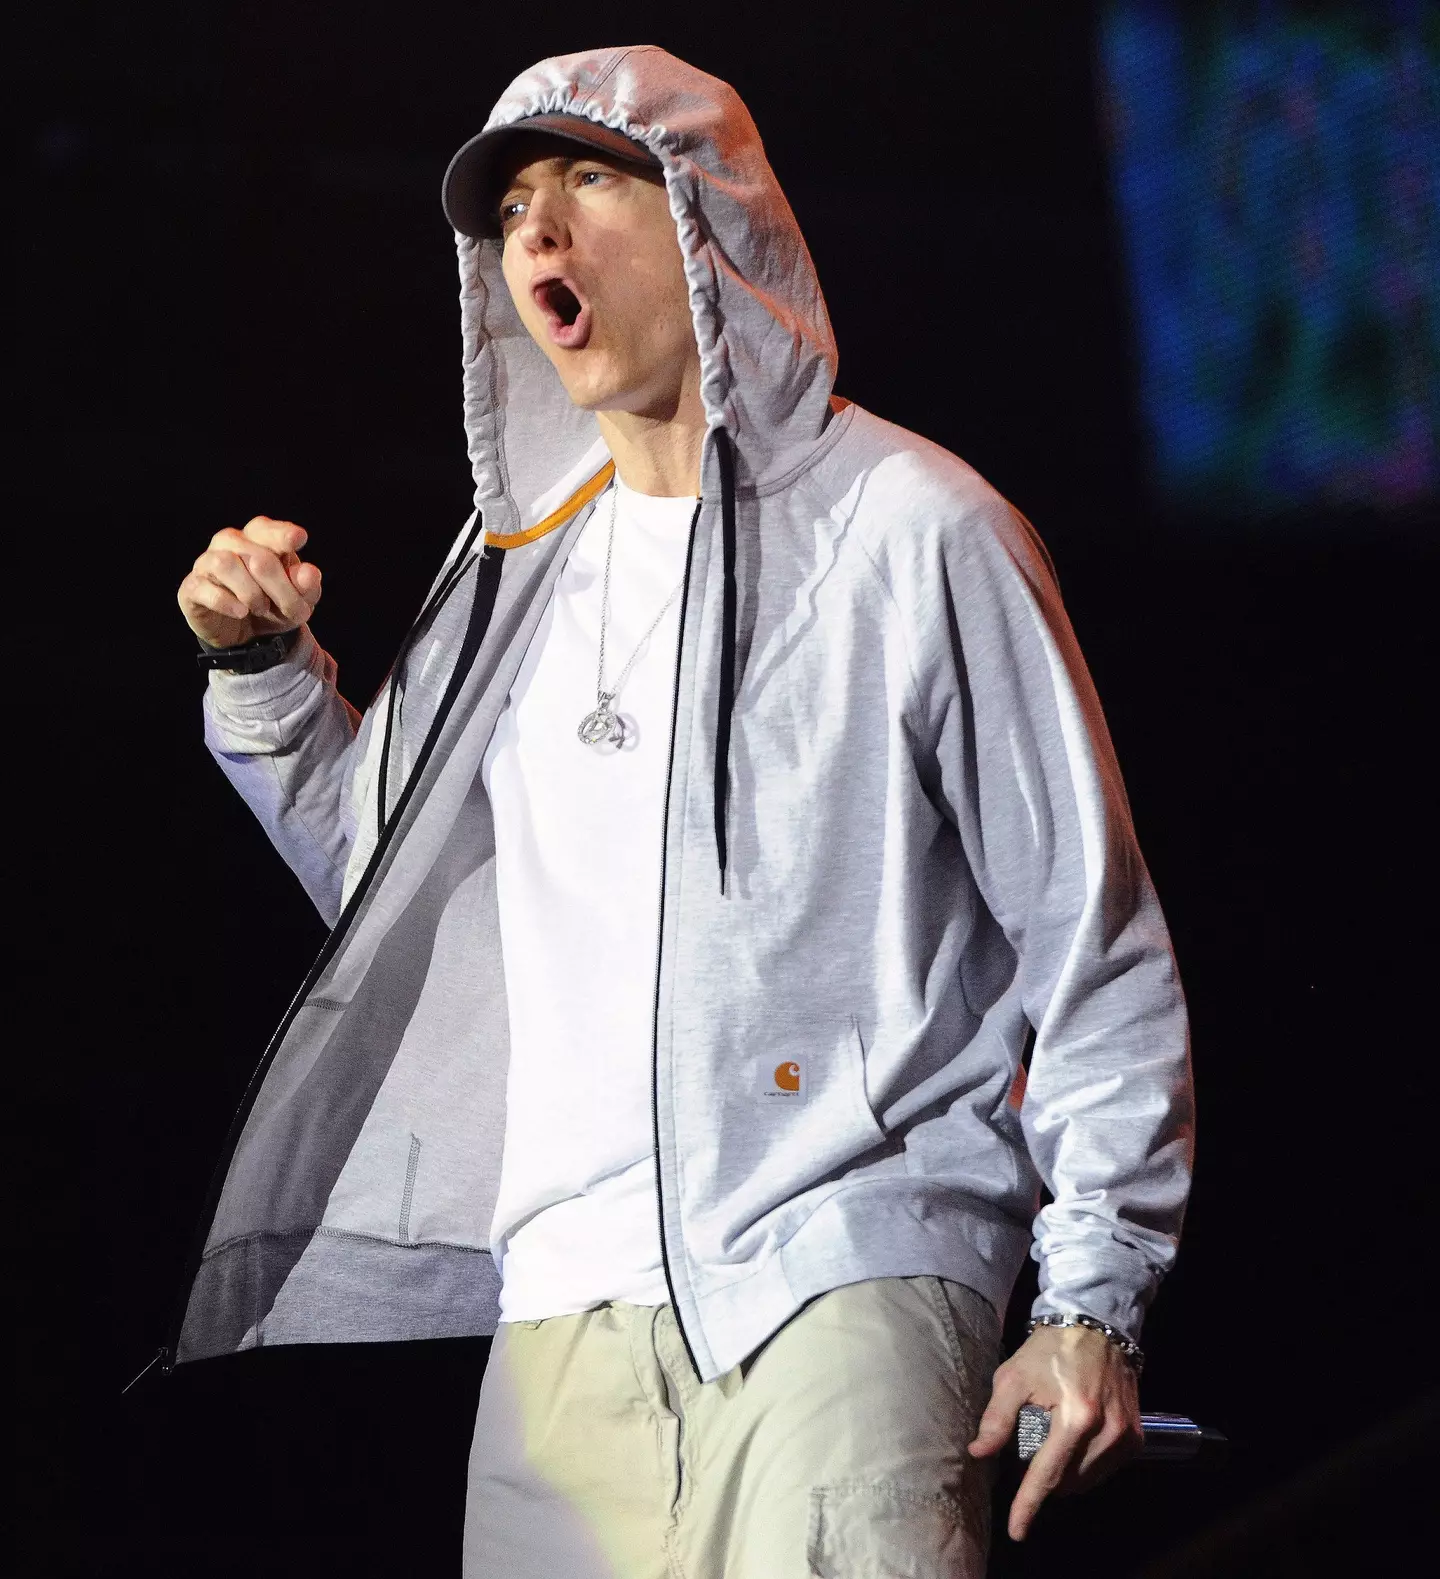 McClintock secured Eminem's blessing.